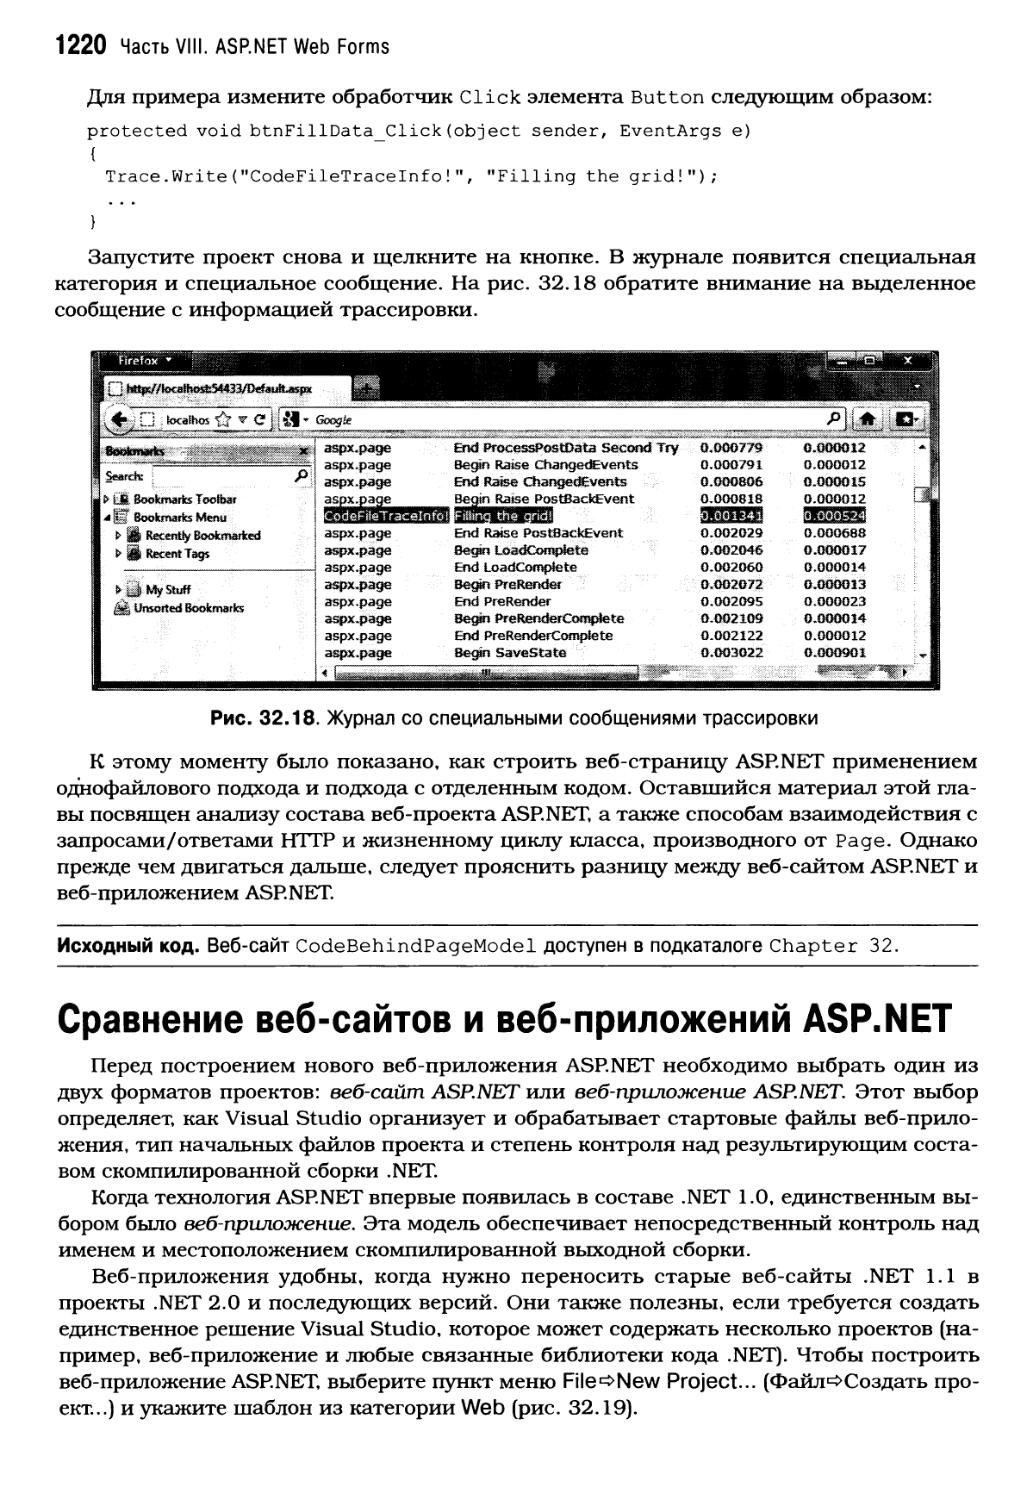 Сравнение веб-сайтов и веб-приложений ASP.NET